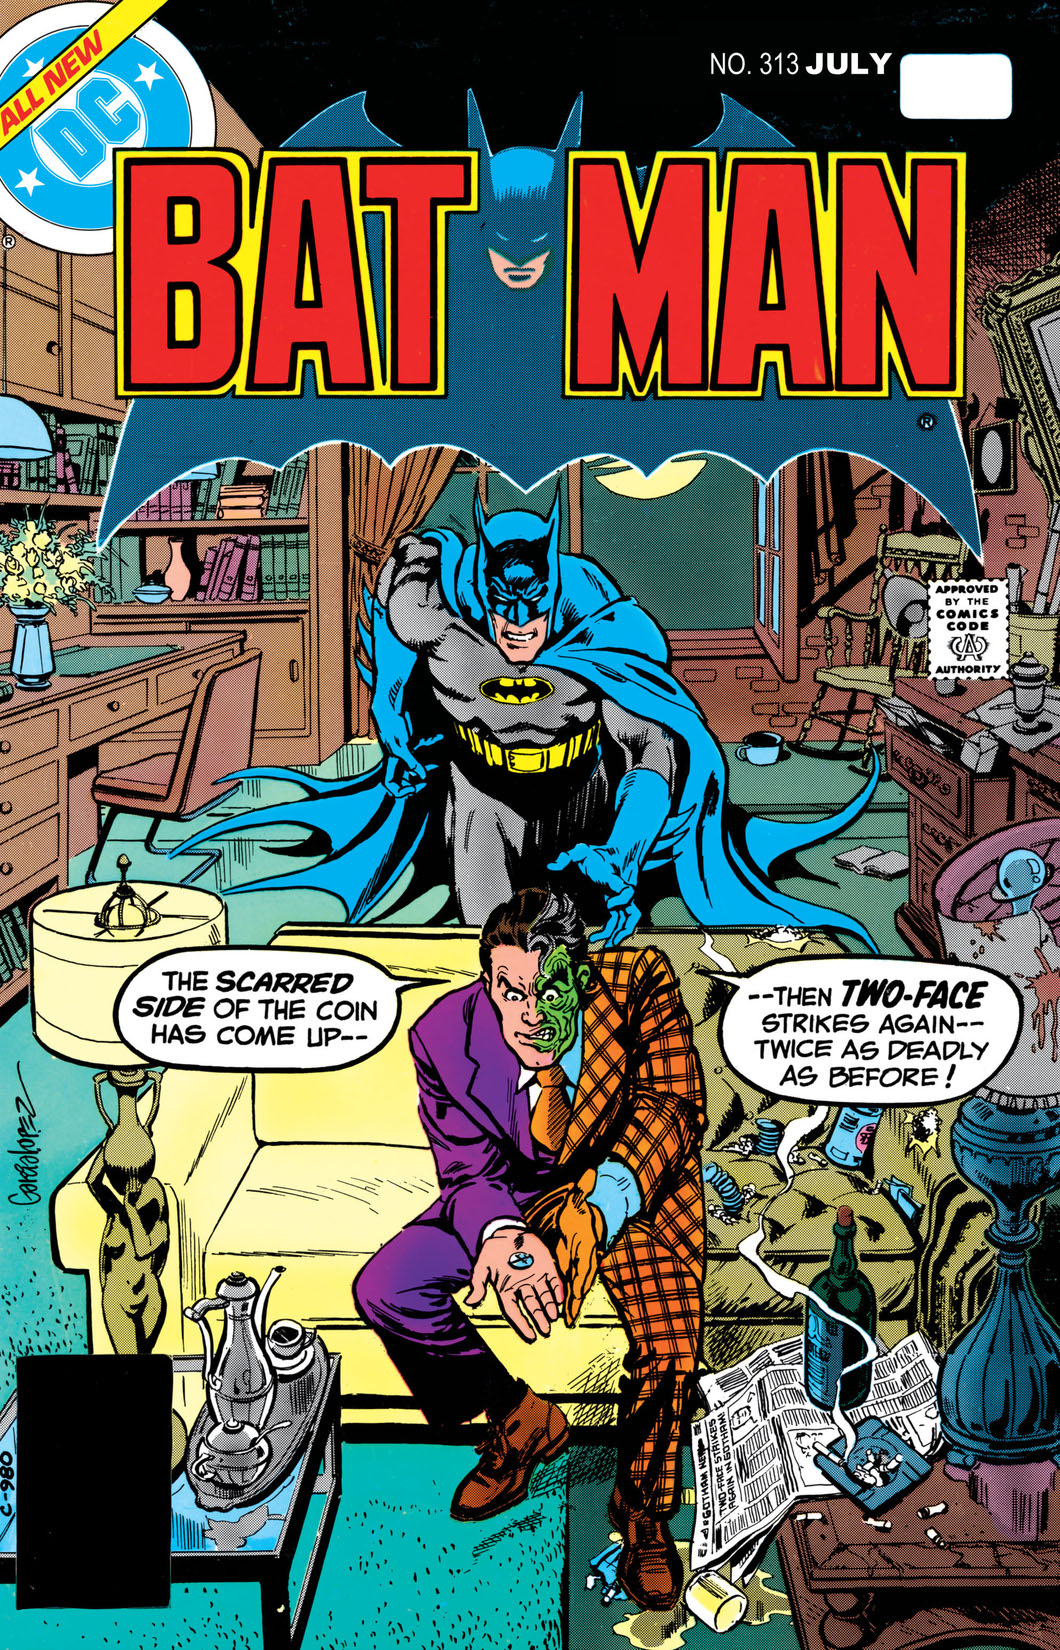 Batman (1940-) #313 preview images